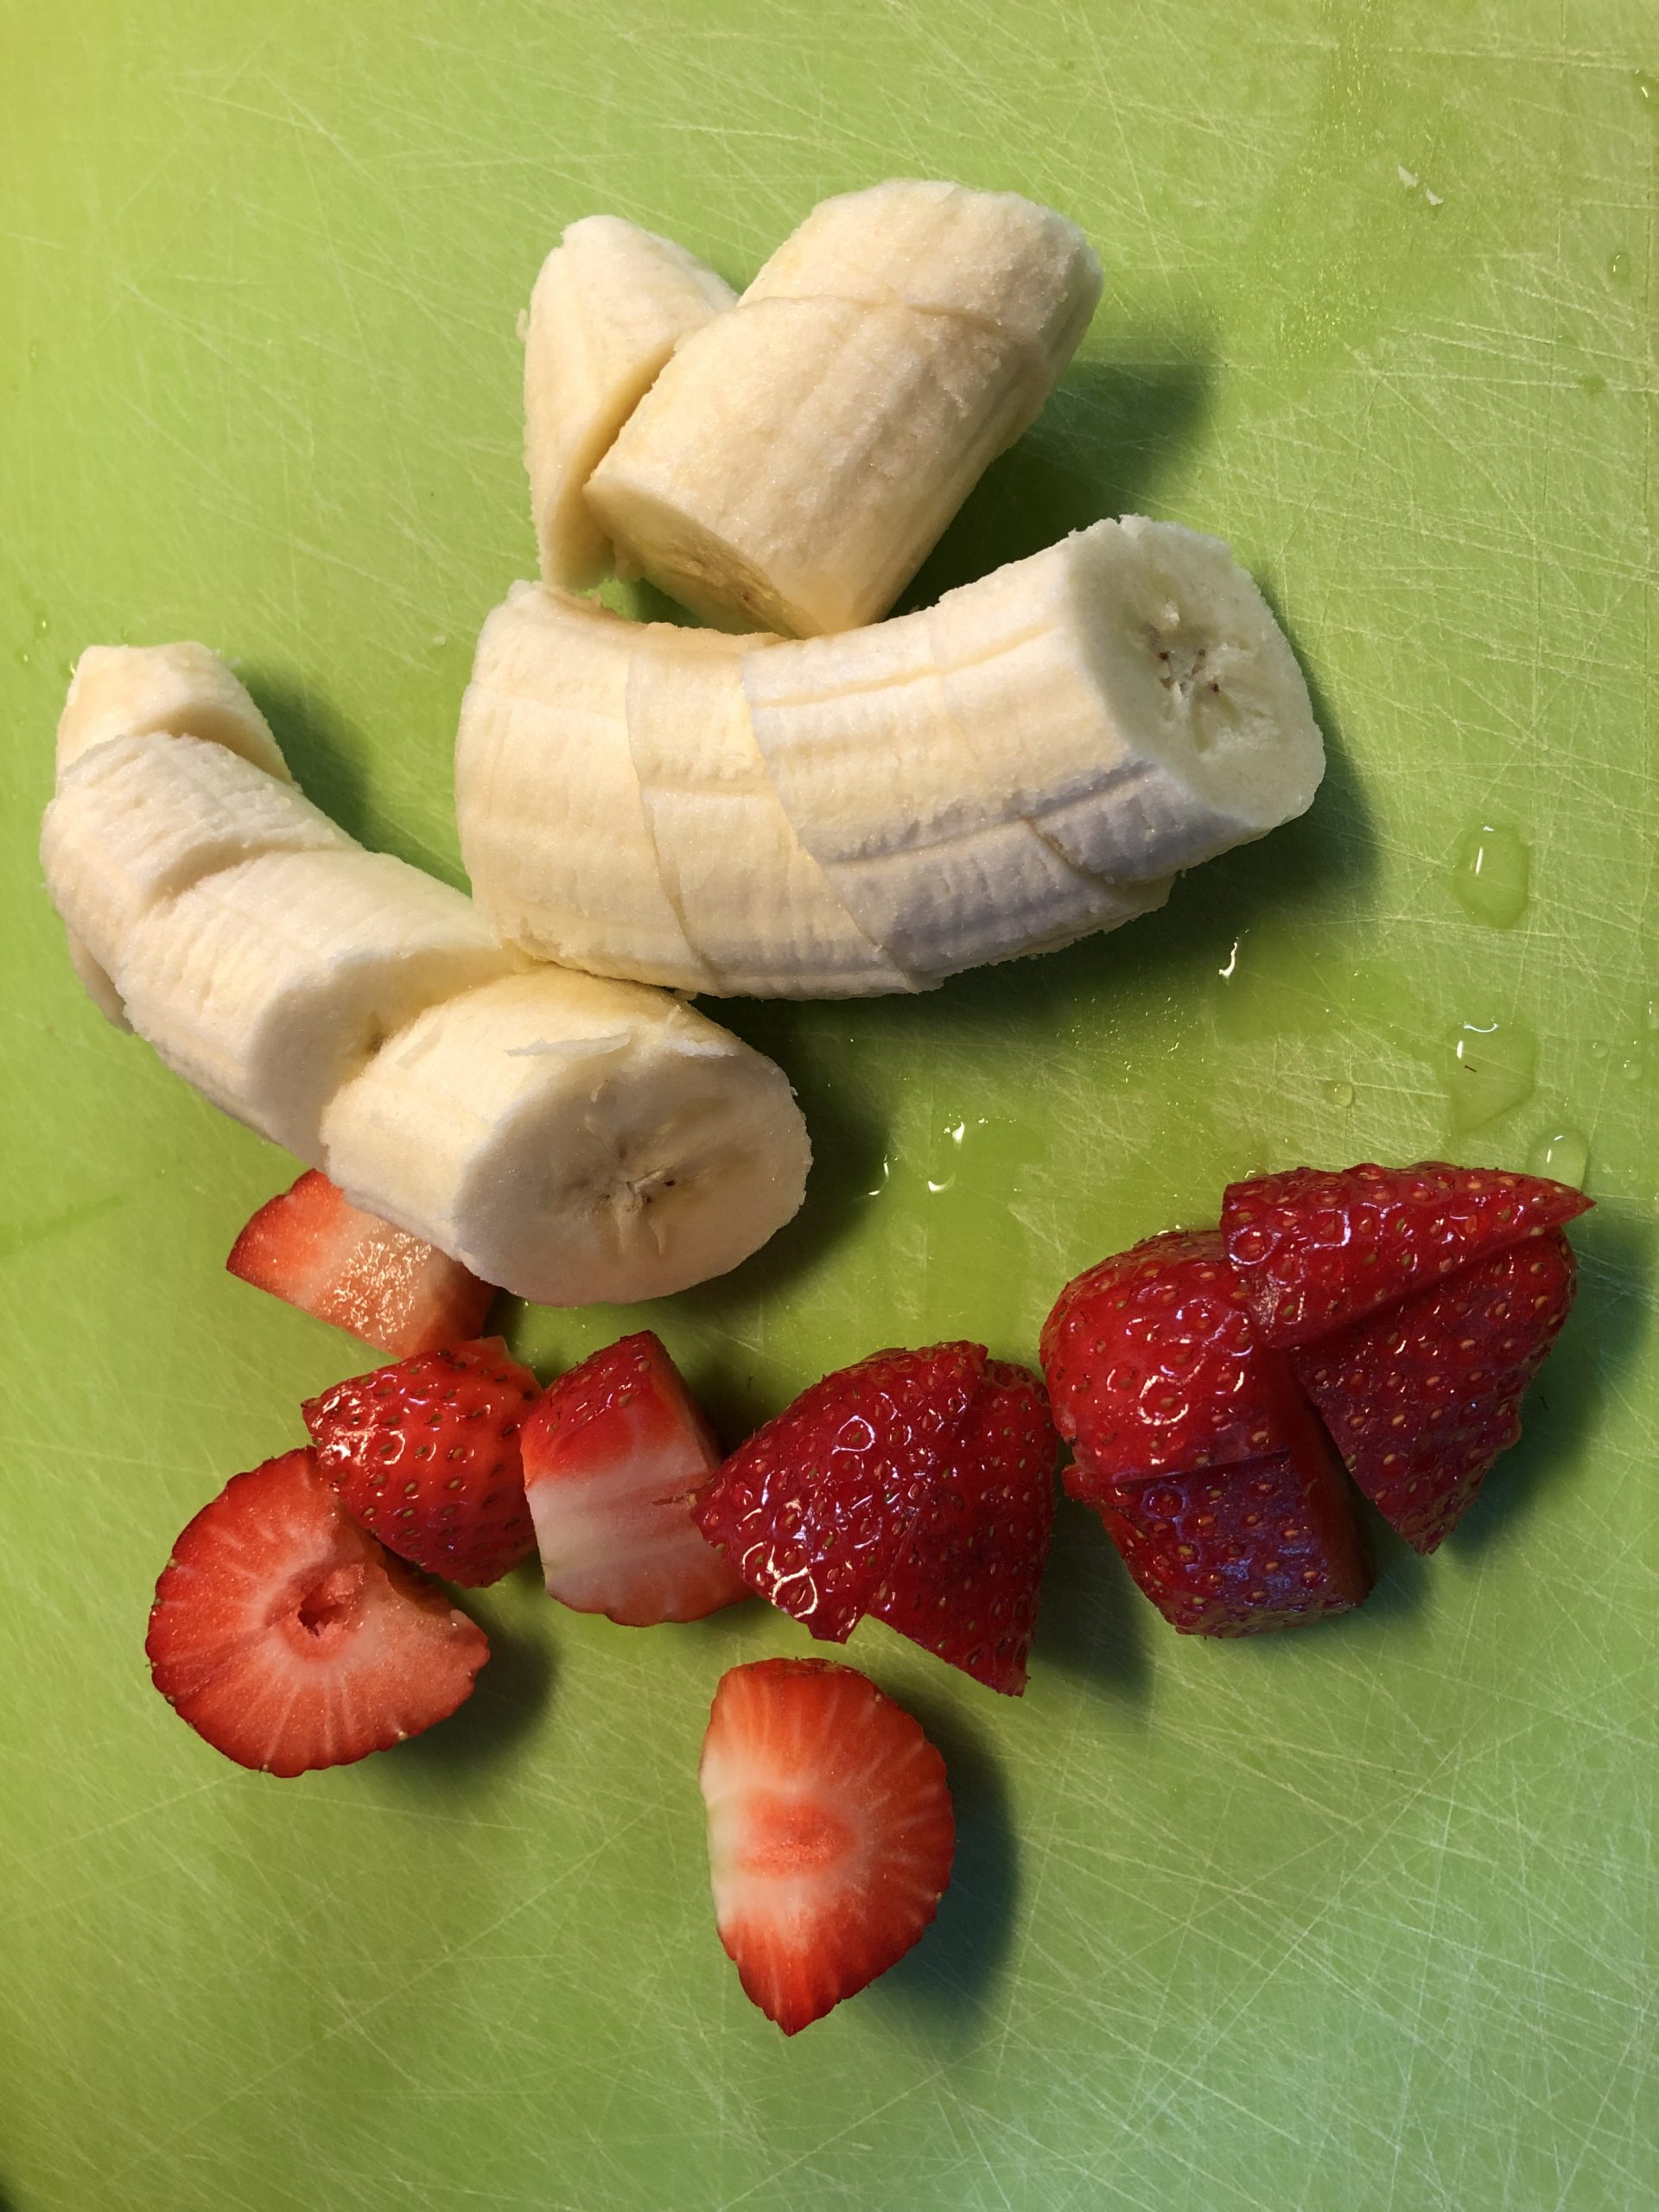 Bild zum Schritt 2 für die Kinder-Beschäftigung: 'Erdbeeren und Banane grob in Stücke schneiden.'